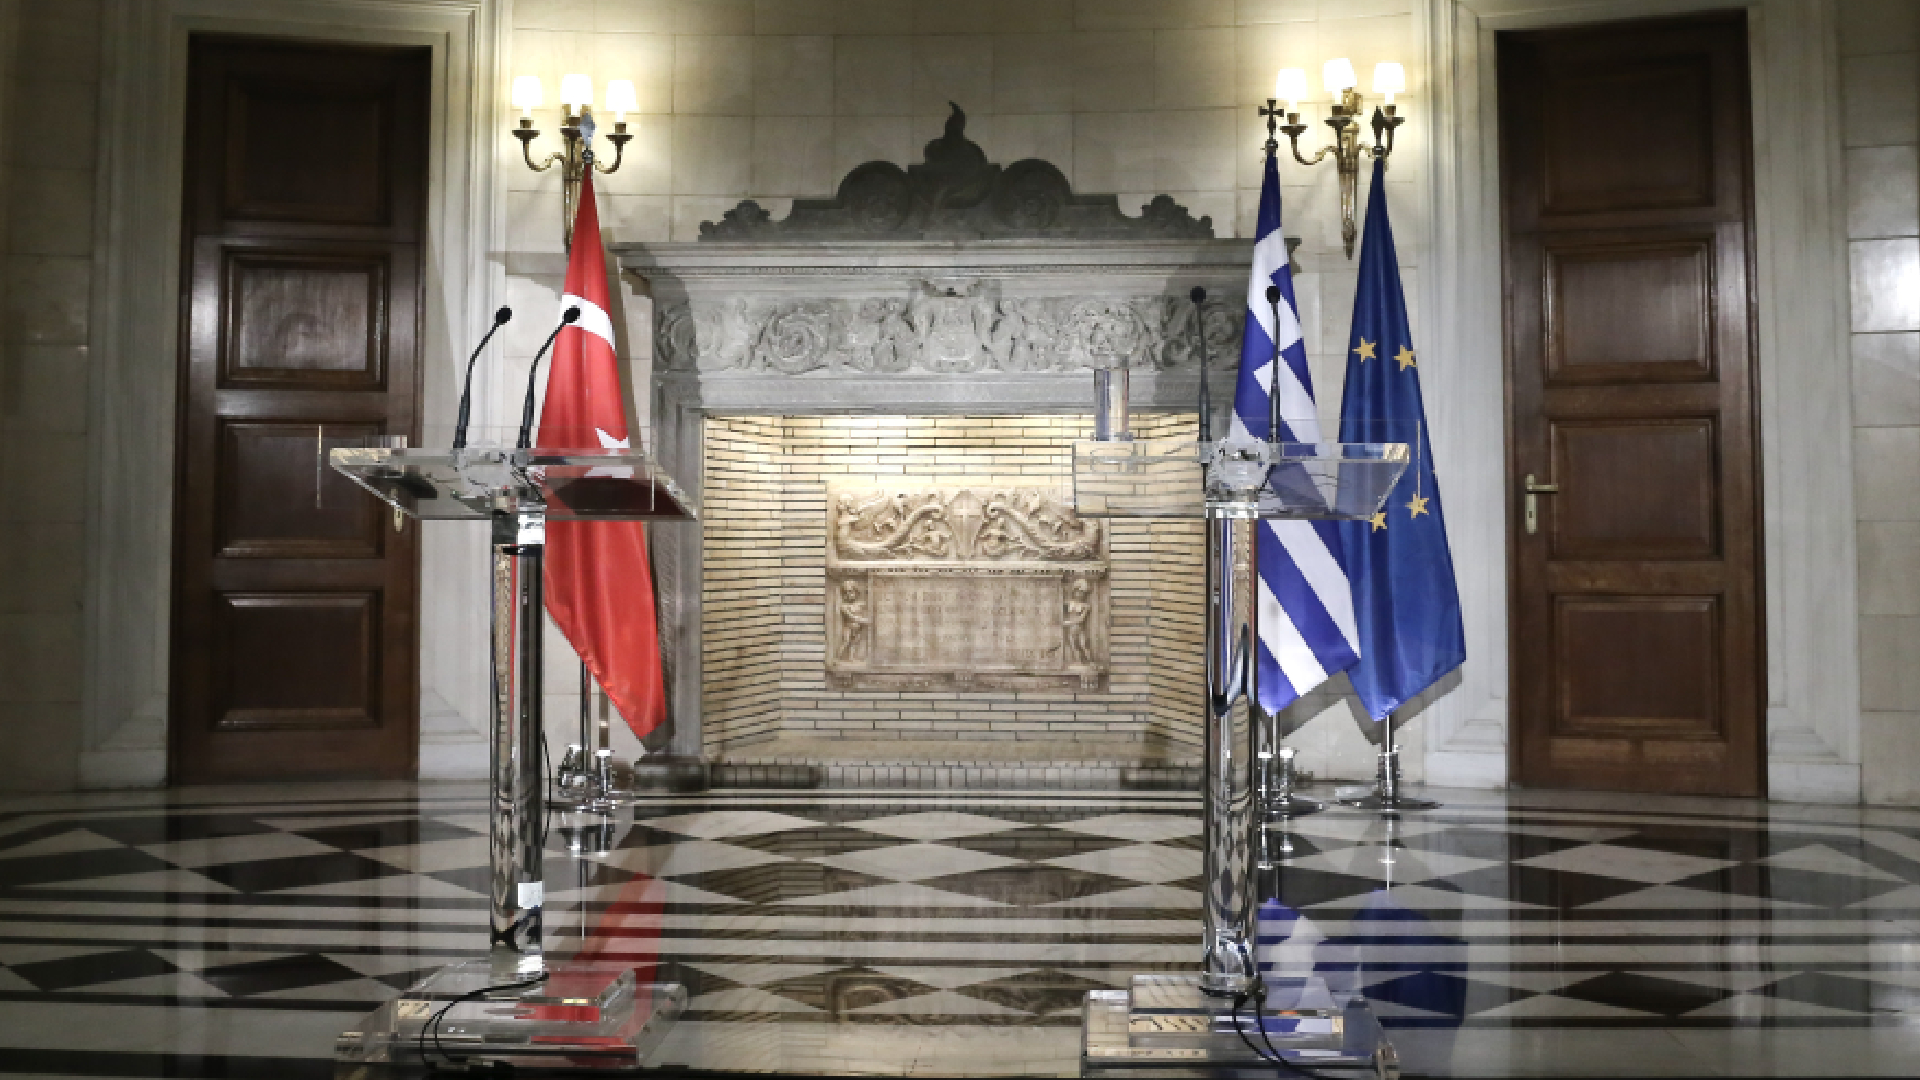 Μπορεί η Ελλάδα να λύσει τις διαφορές της με την Τουρκία;